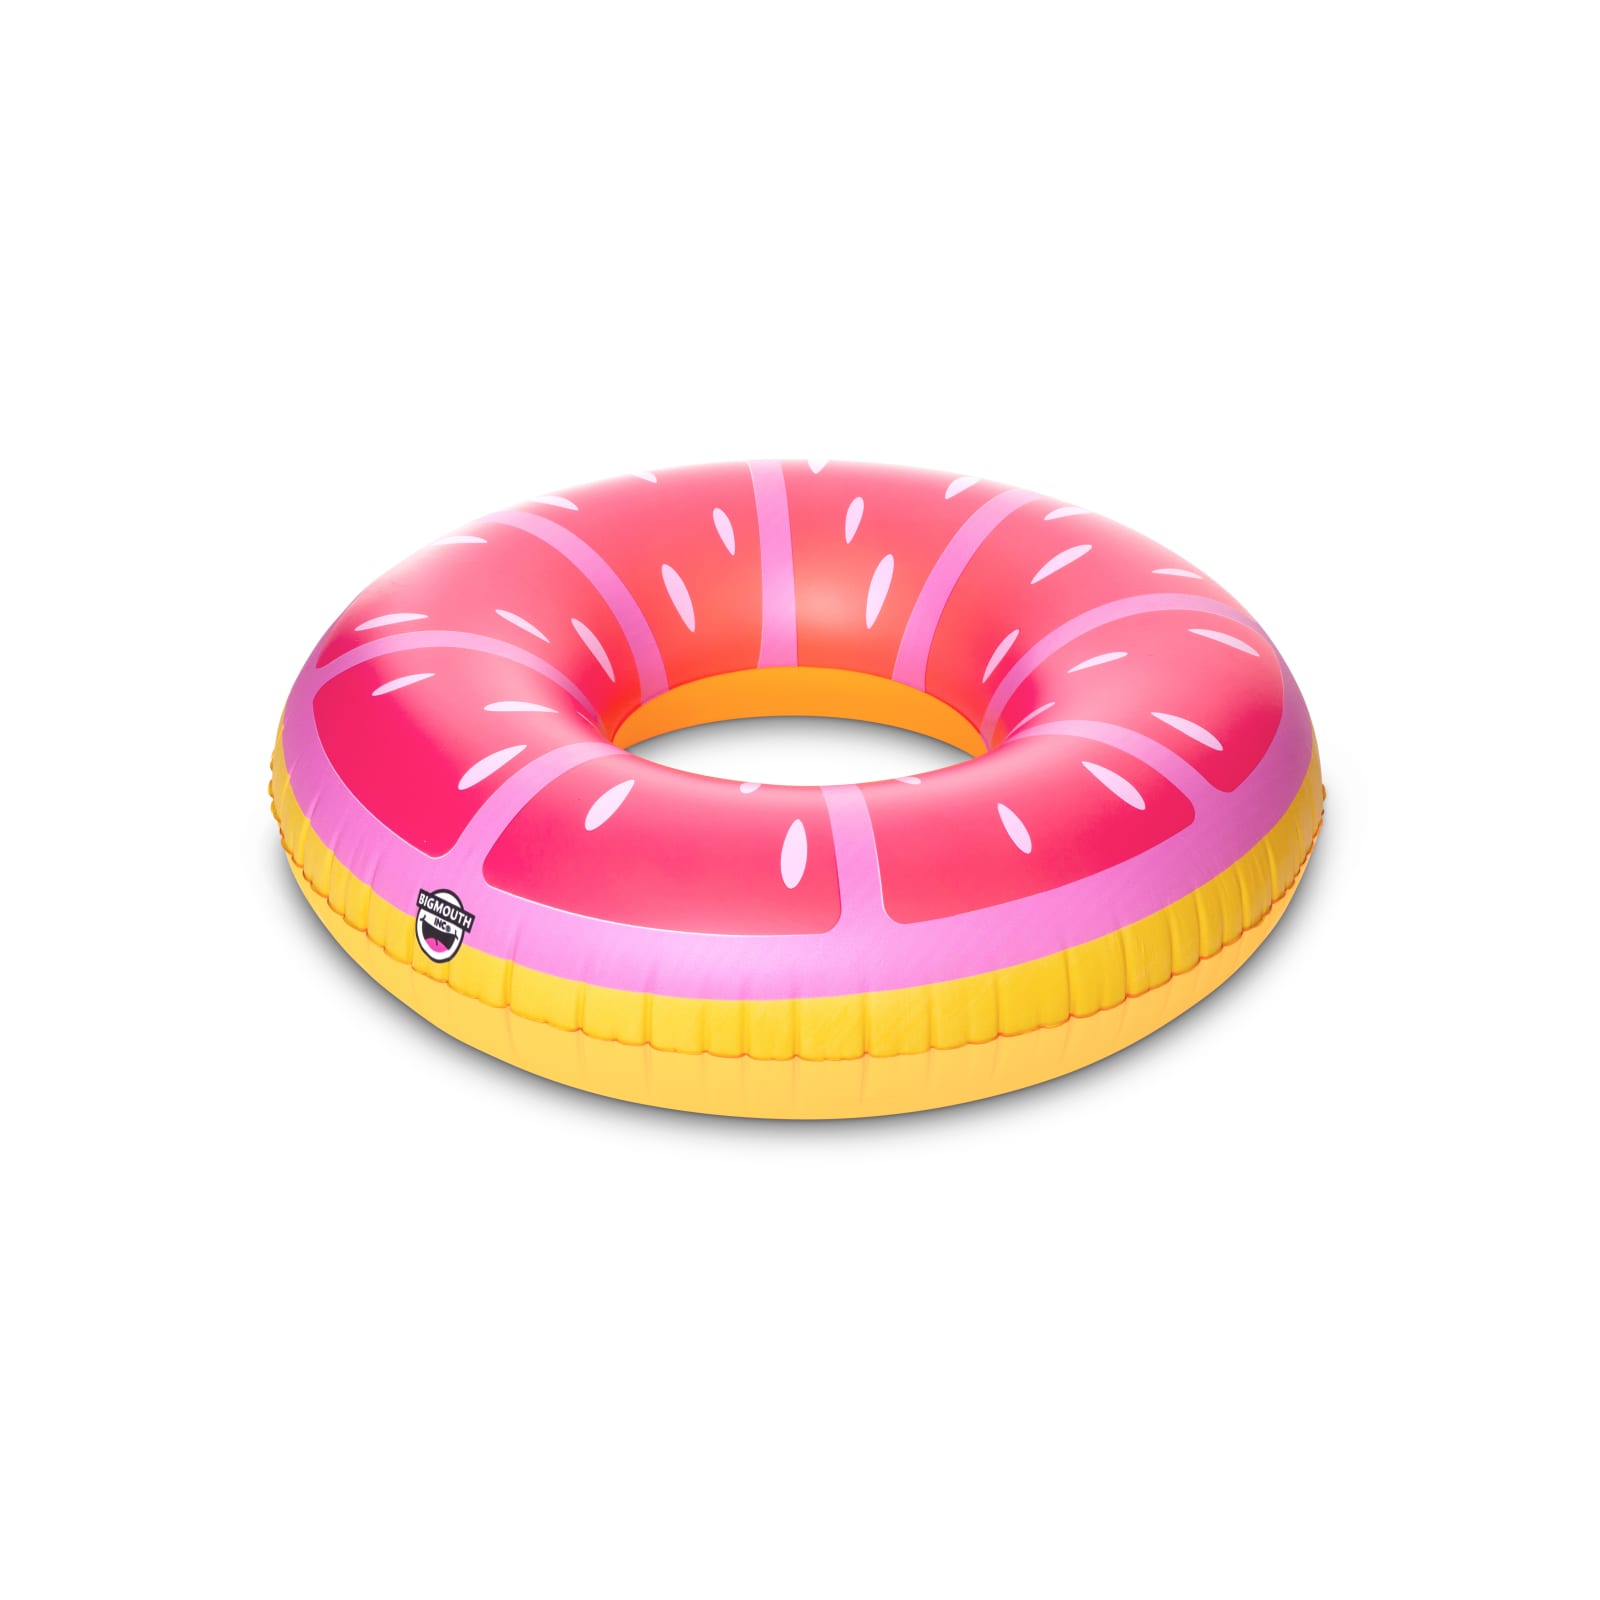 Giant Pink Lemon Tube Pool Float